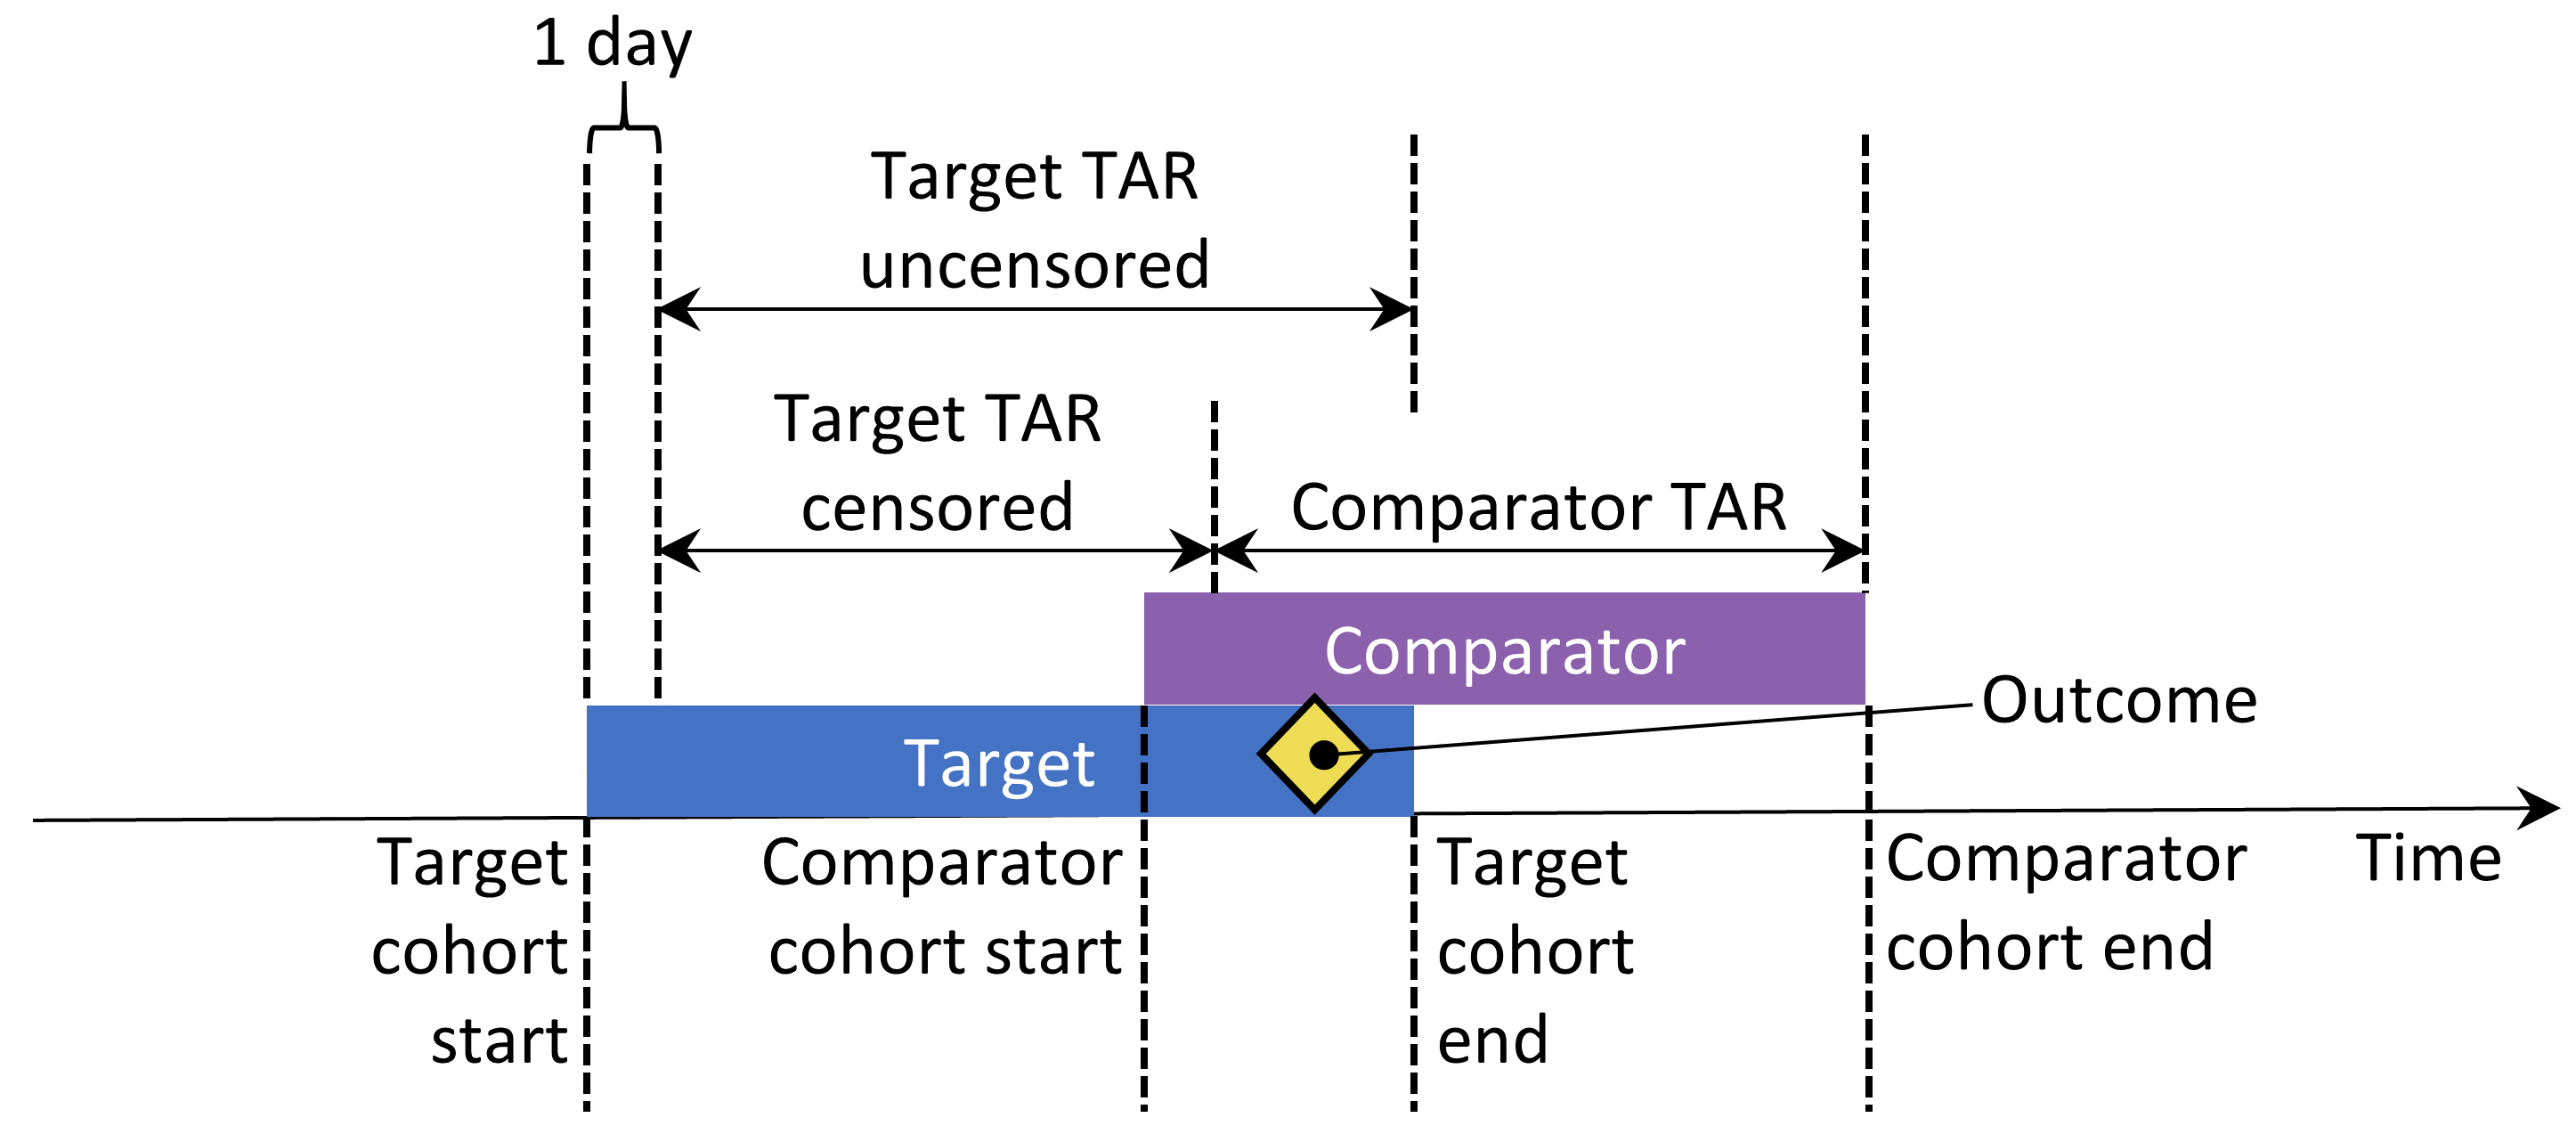 두 코호트에 모두 포함된 피험자의 위험 노출 기간 TAR은 치료 시작 다음 날부터 시작하여 노출 끝에서 멈춘다고 가정한다.